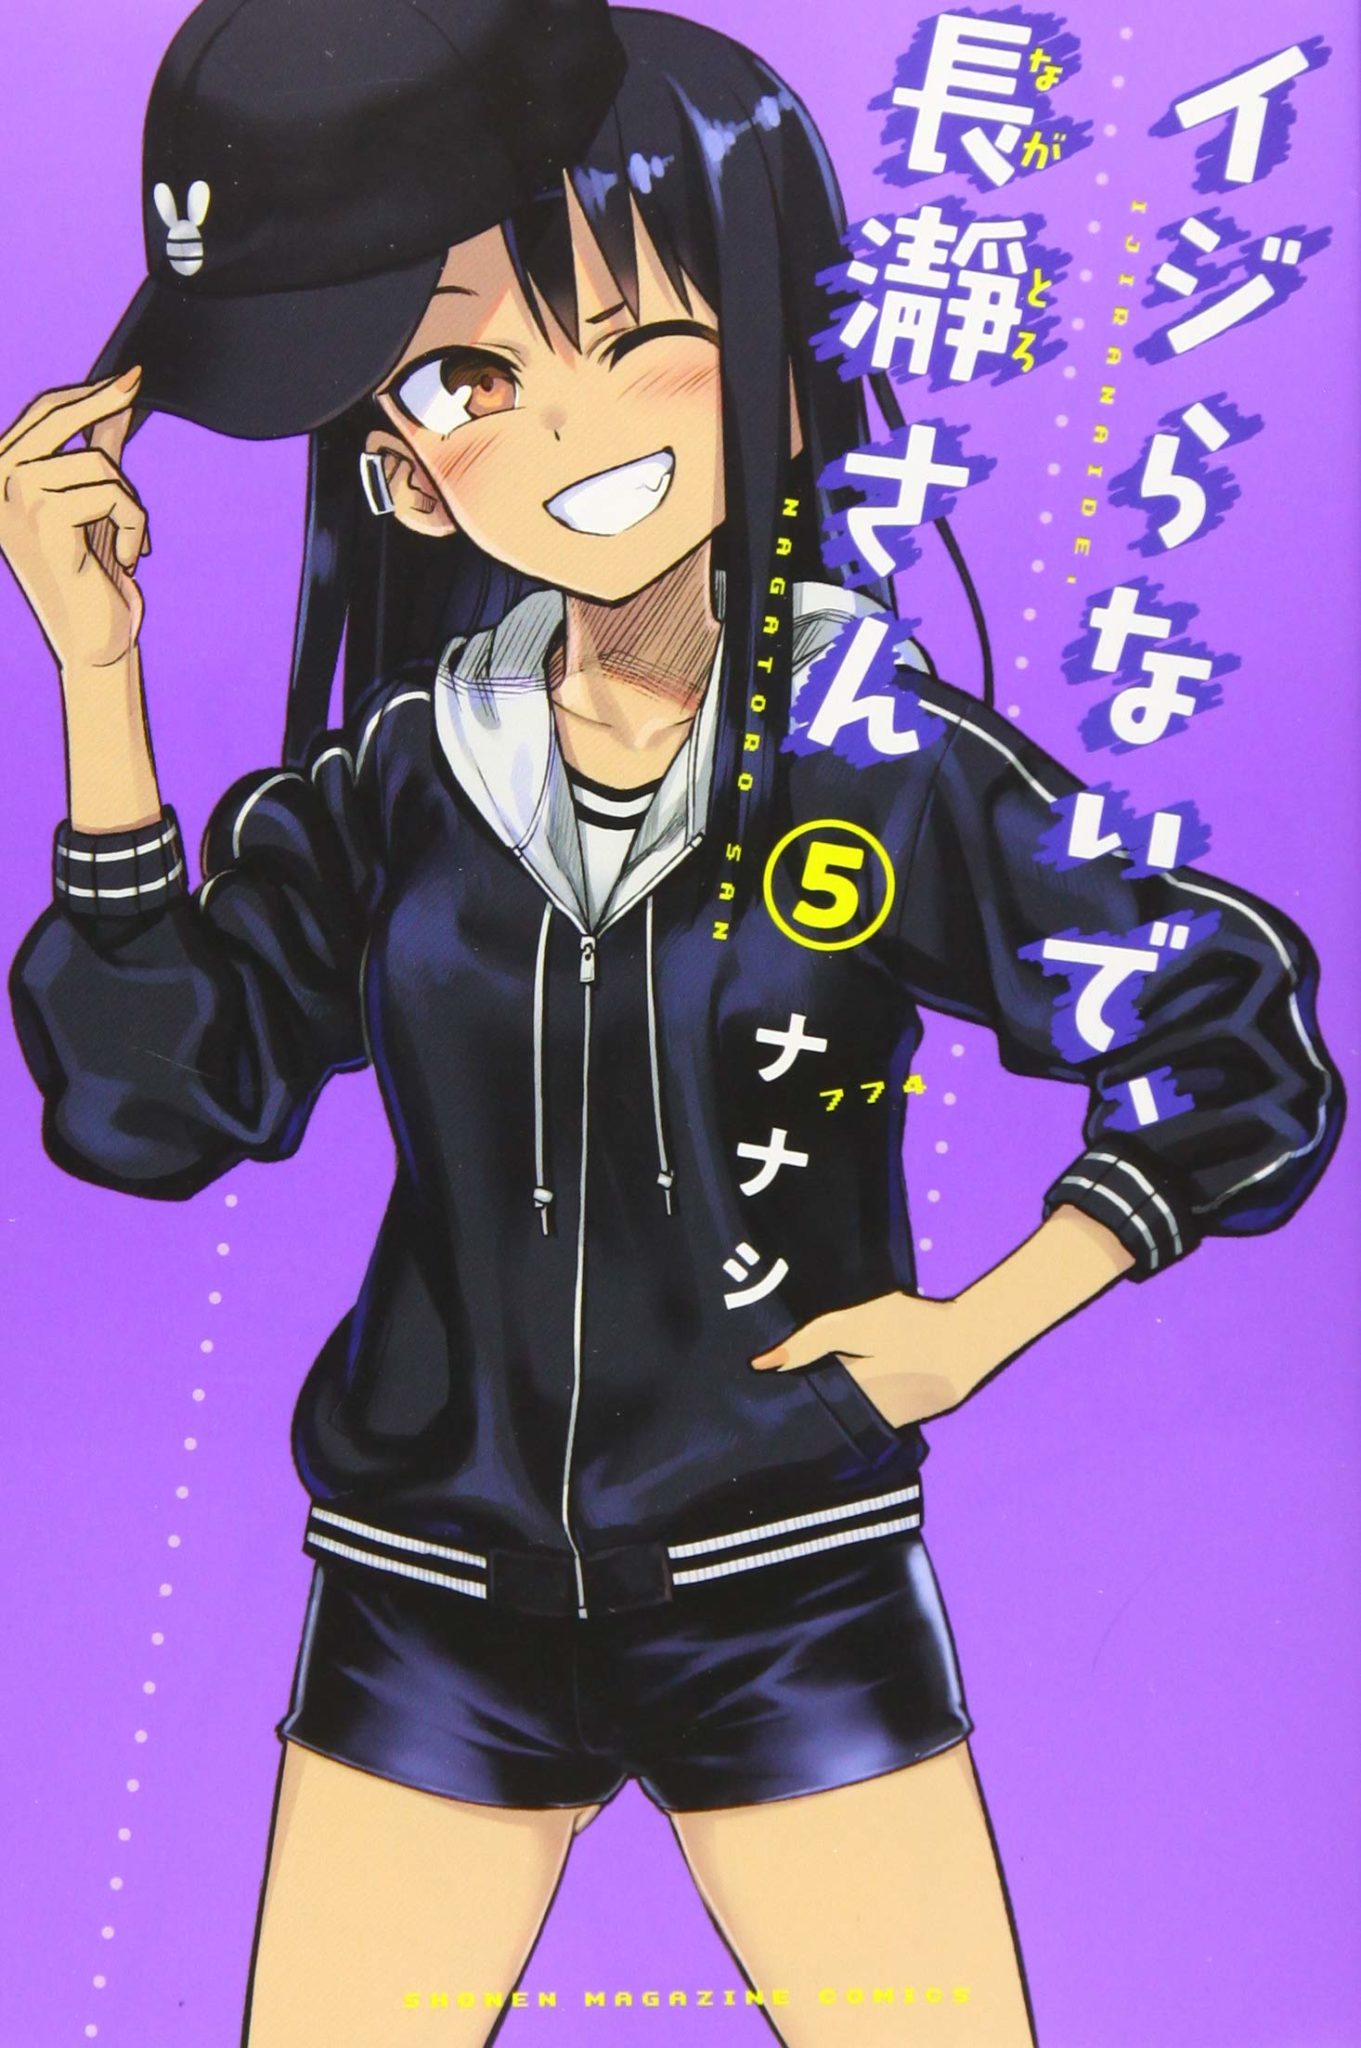 Nagatoro Manga Wallpaper